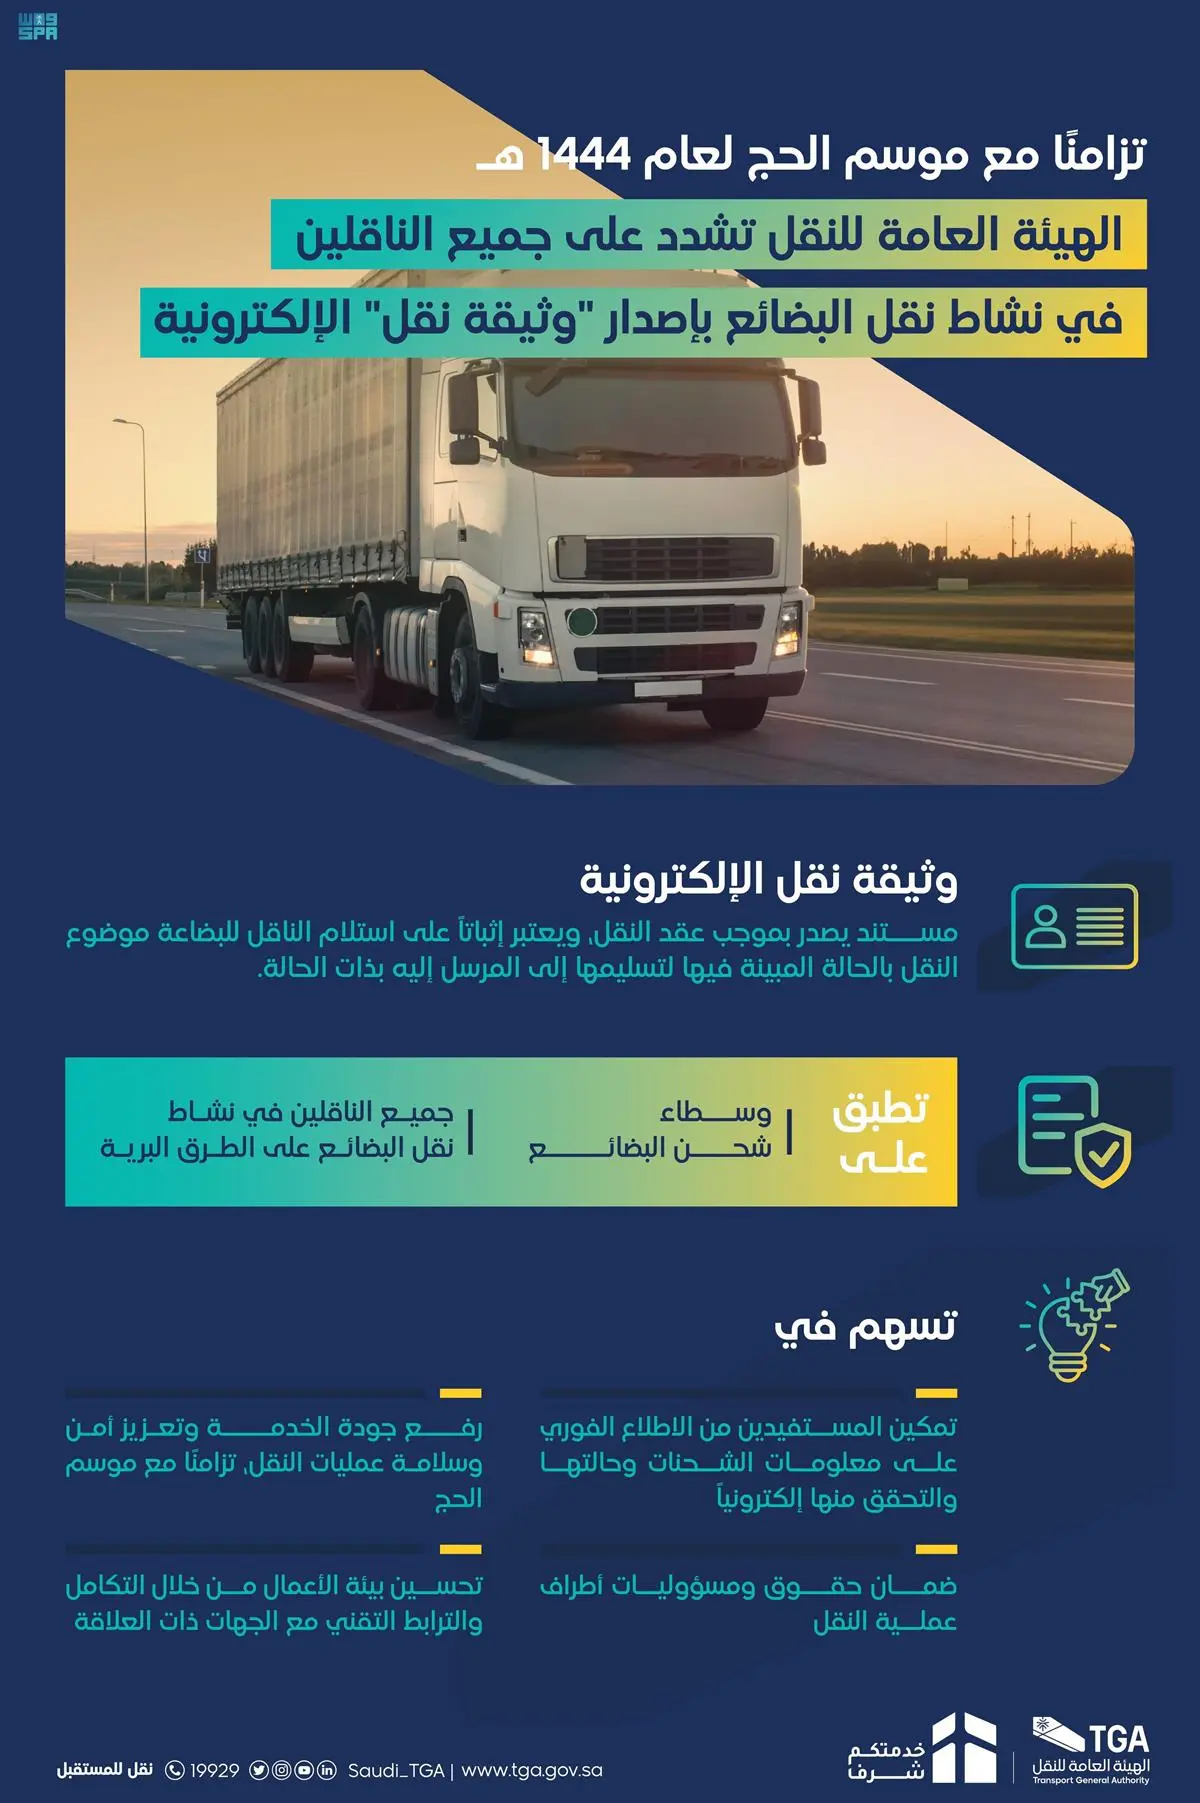 الهيئة العامة للنقل تشدِّد على ناقلي البضائع عبر الطرق البرية بإصدار "وثيقة نقل" الإلكترونية